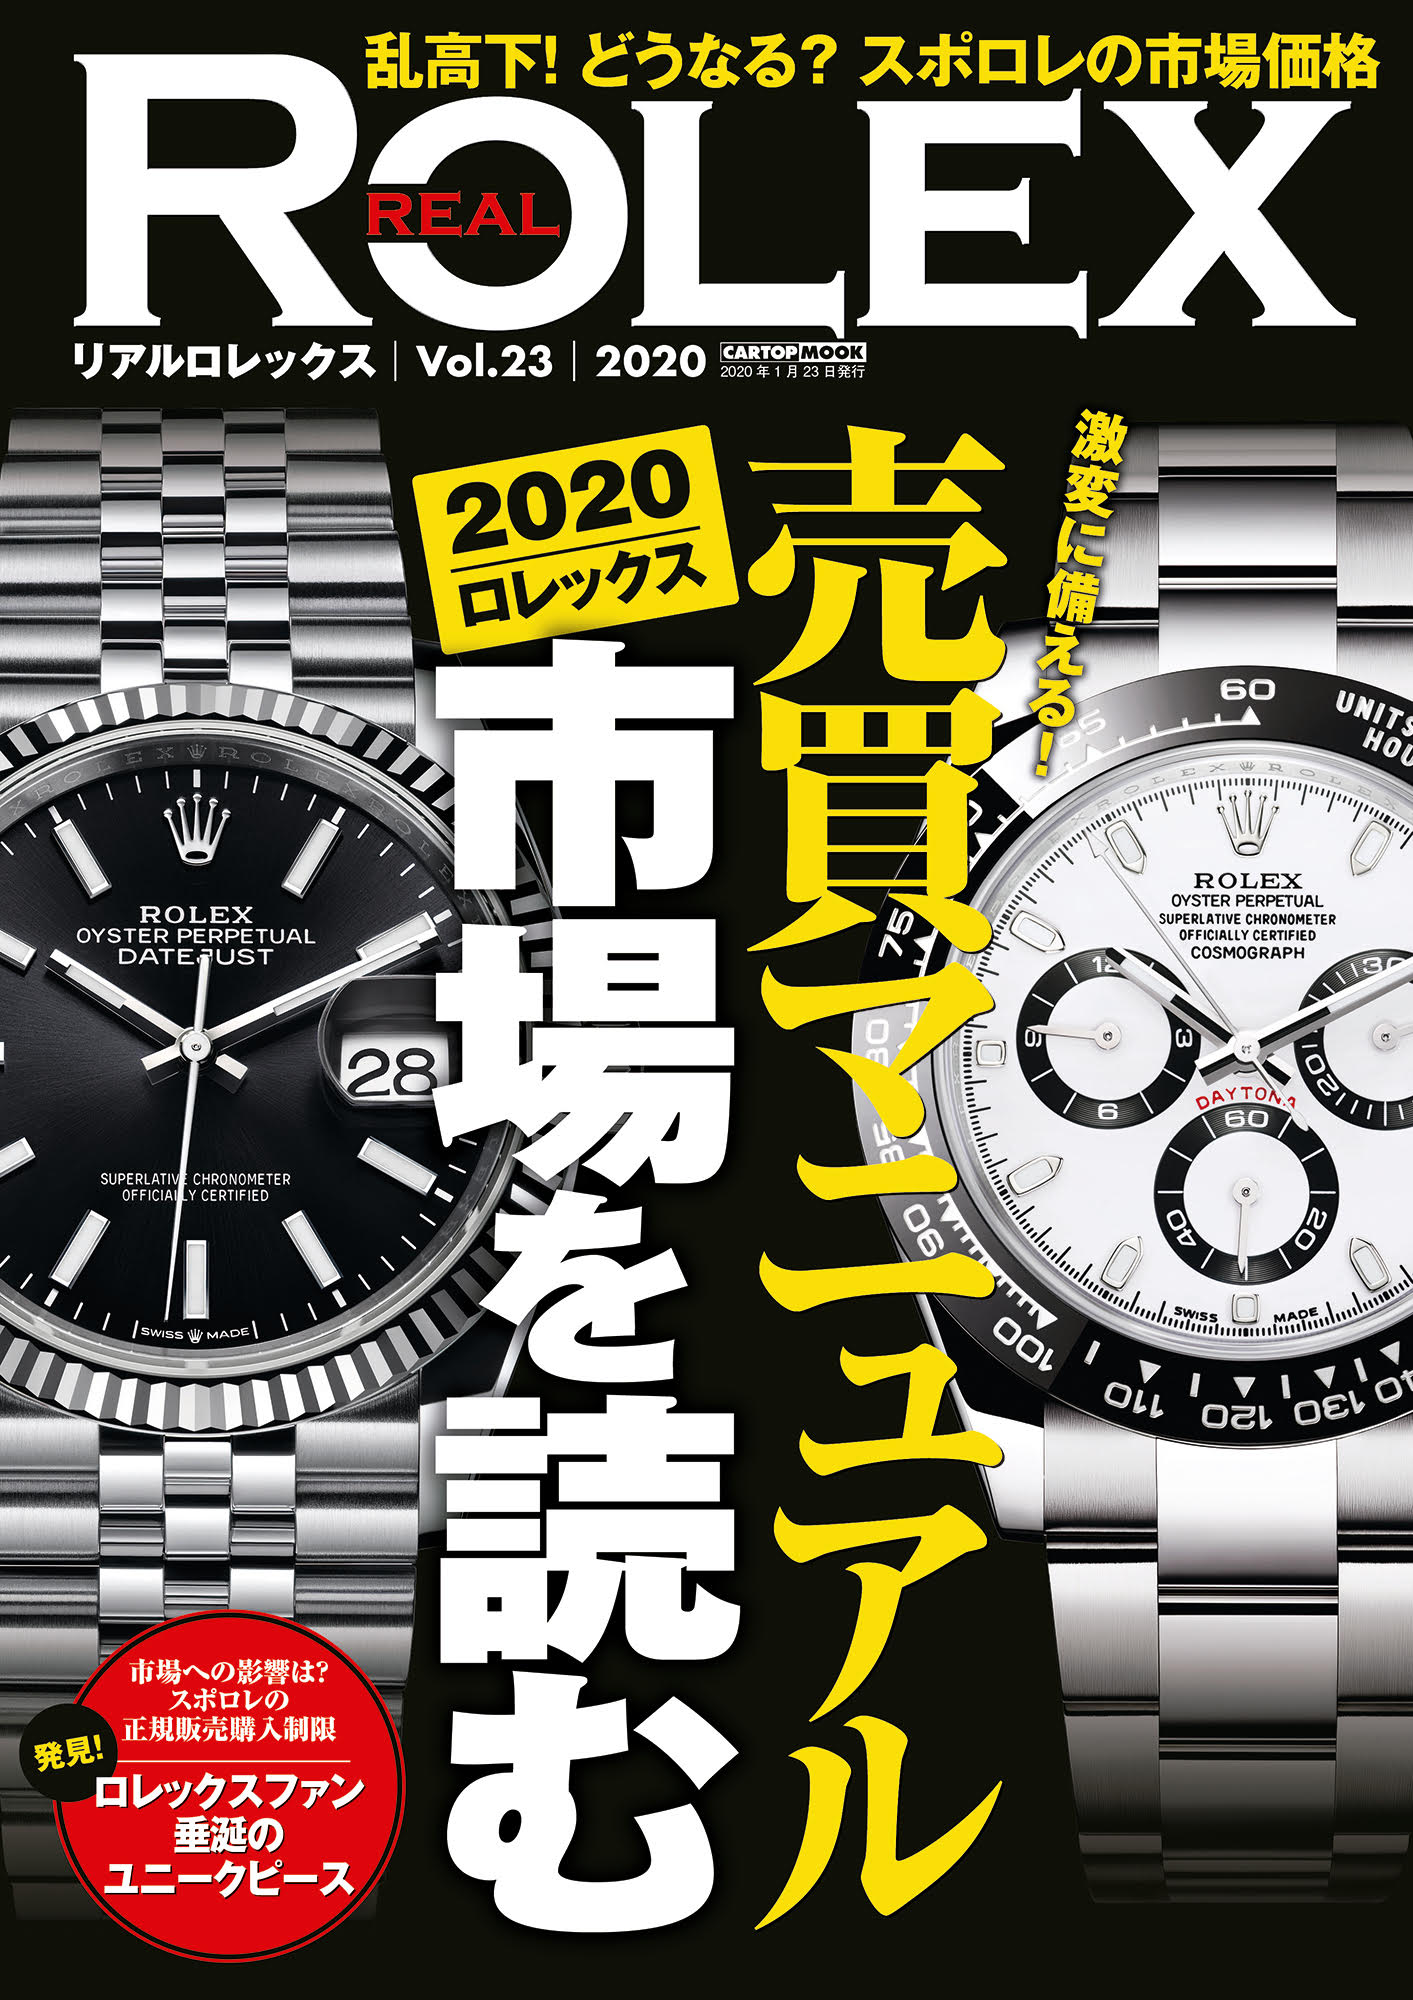 Real Rolex リアルロレックス Vol 23 株式会社交通タイムス社